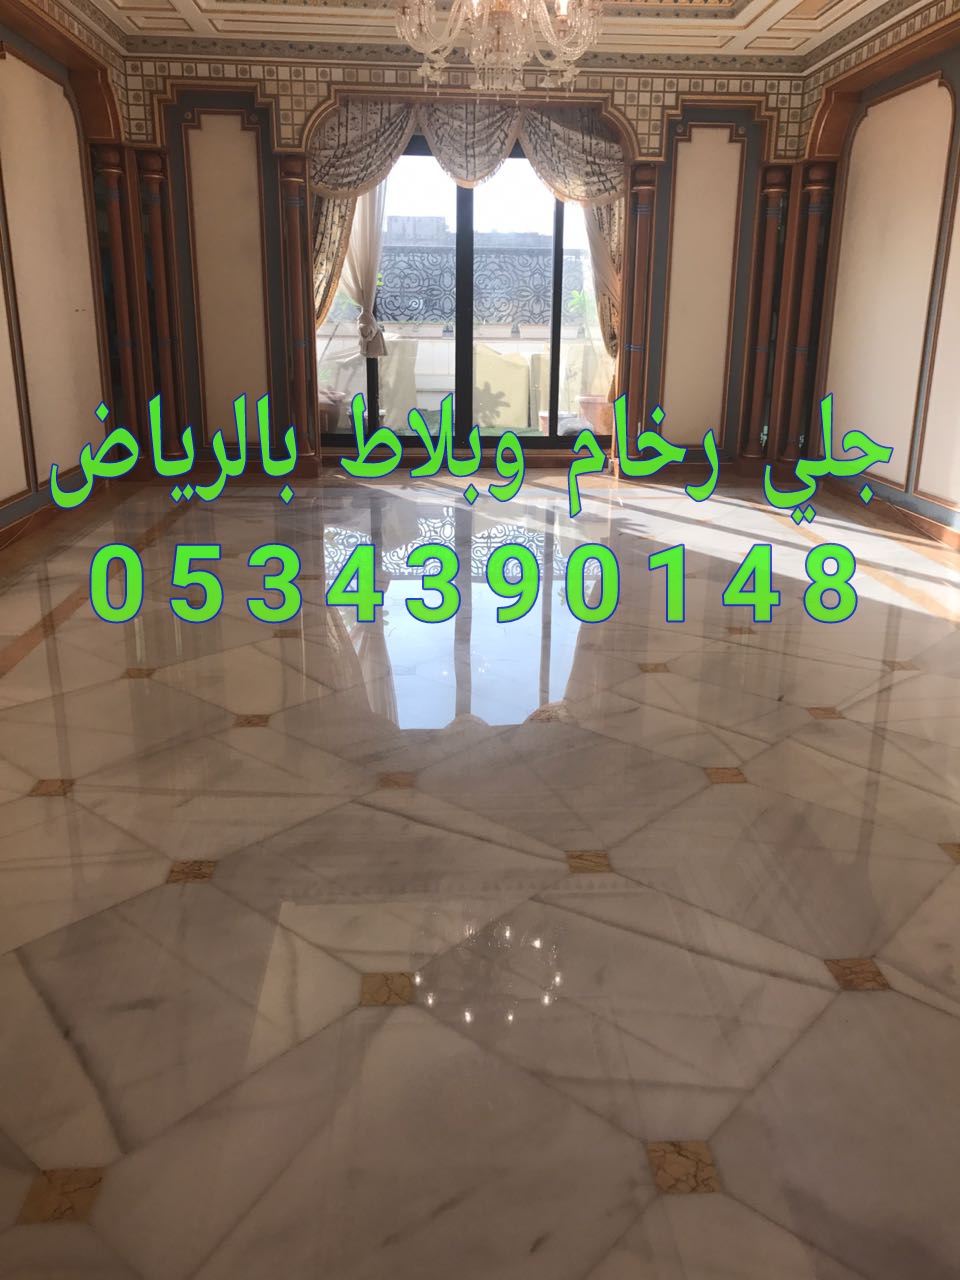 جلي وتلميع  الرخام في الرياض من شركة الجوهرة 0534390148 شركة جلي رخام بالرياض P_11486wjlw0